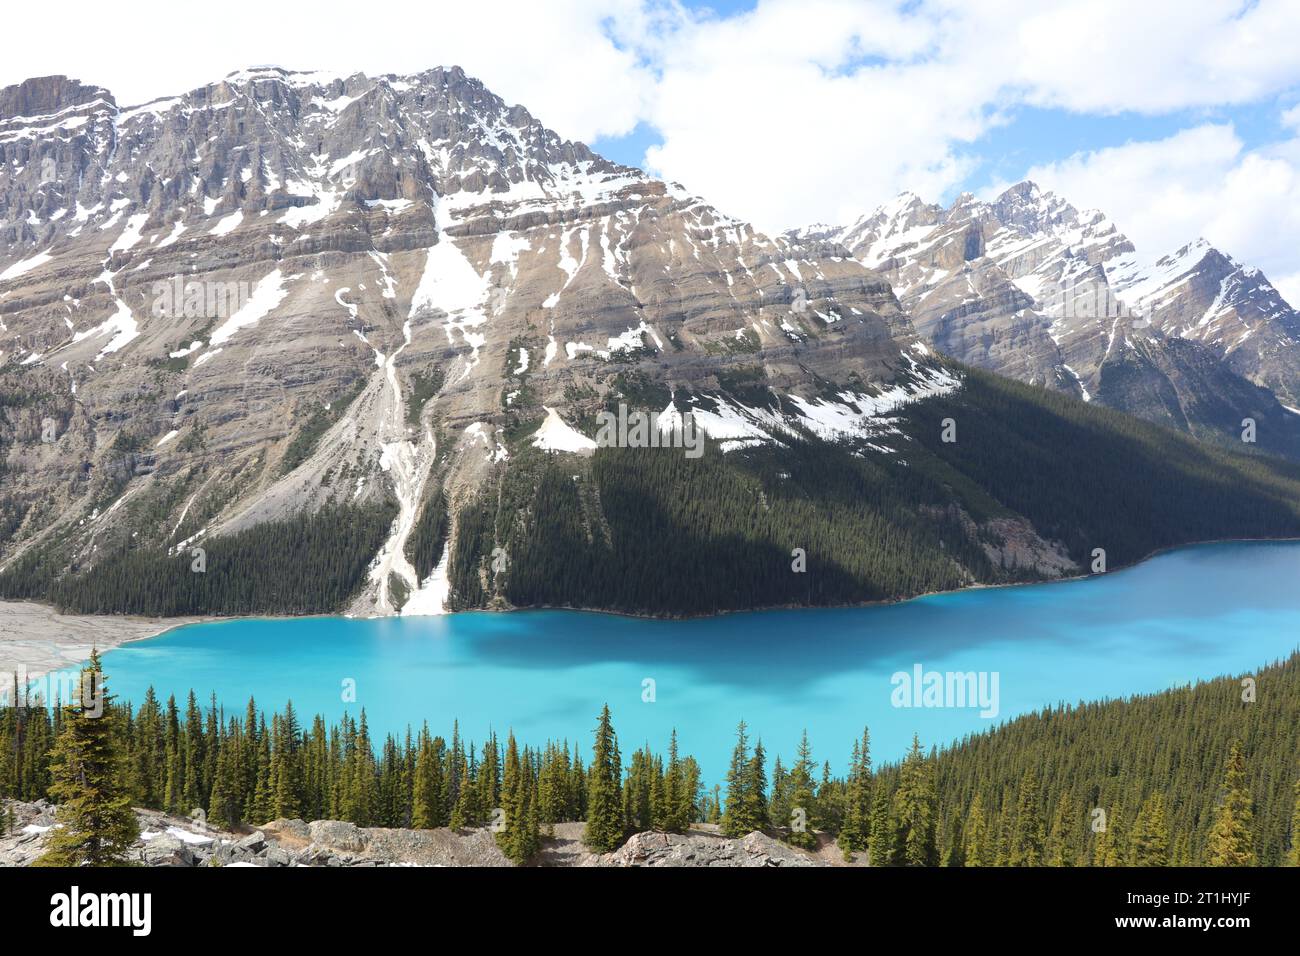 Il lago Peyto è un lago alimentato da ghiacciai nel Banff National Park, nelle Montagne Rocciose canadesi. Il lago stesso è vicino all'Icefields Parkway. Foto Stock